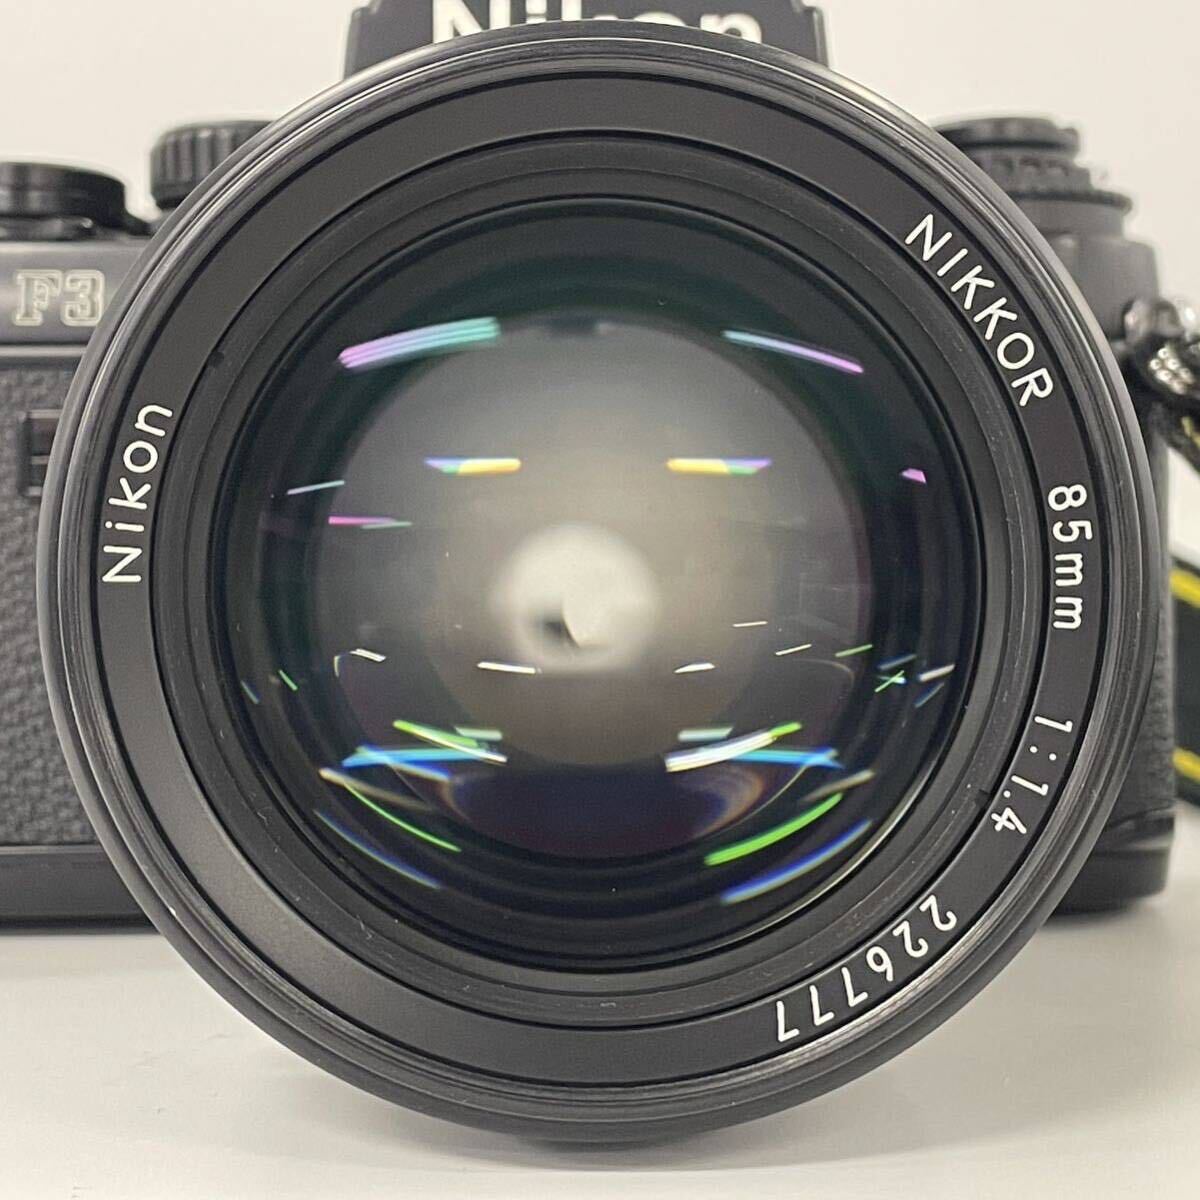 [4Z13]1 jpy start Nikon F3 HP Nikon lens Nikon NIKKOR 85mm 1:1.4 single‐lens reflex camera film camera black body -